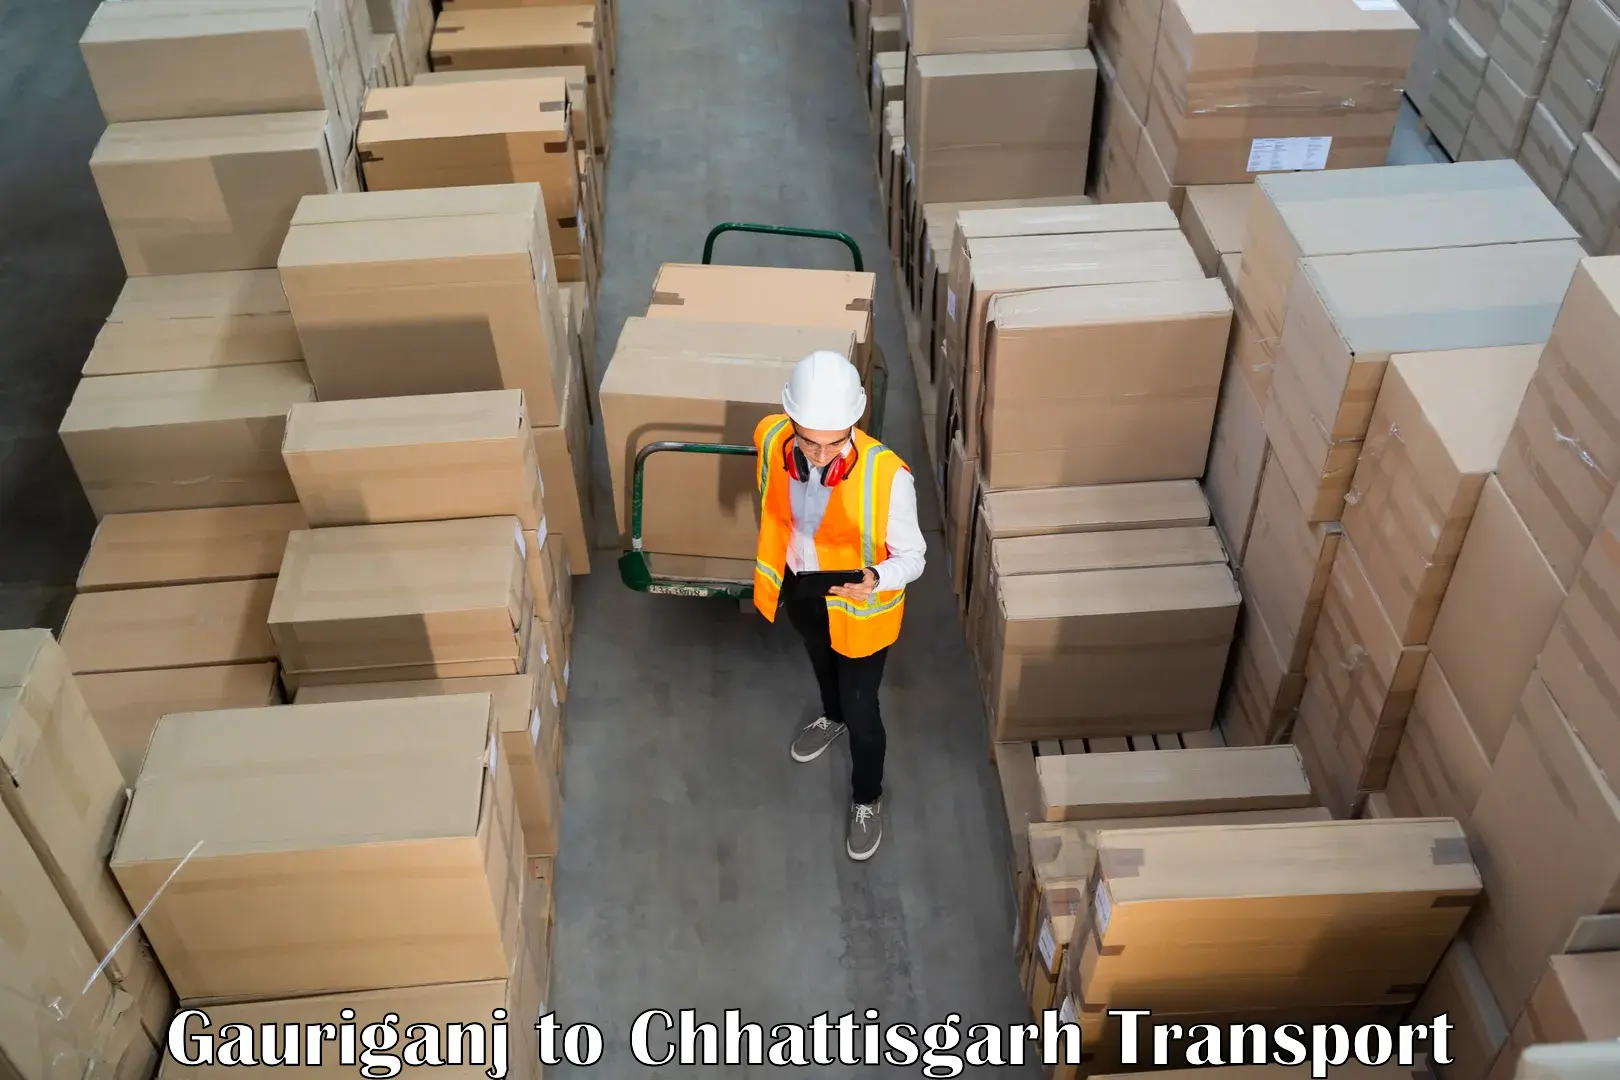 Transport in sharing Gauriganj to Chhattisgarh